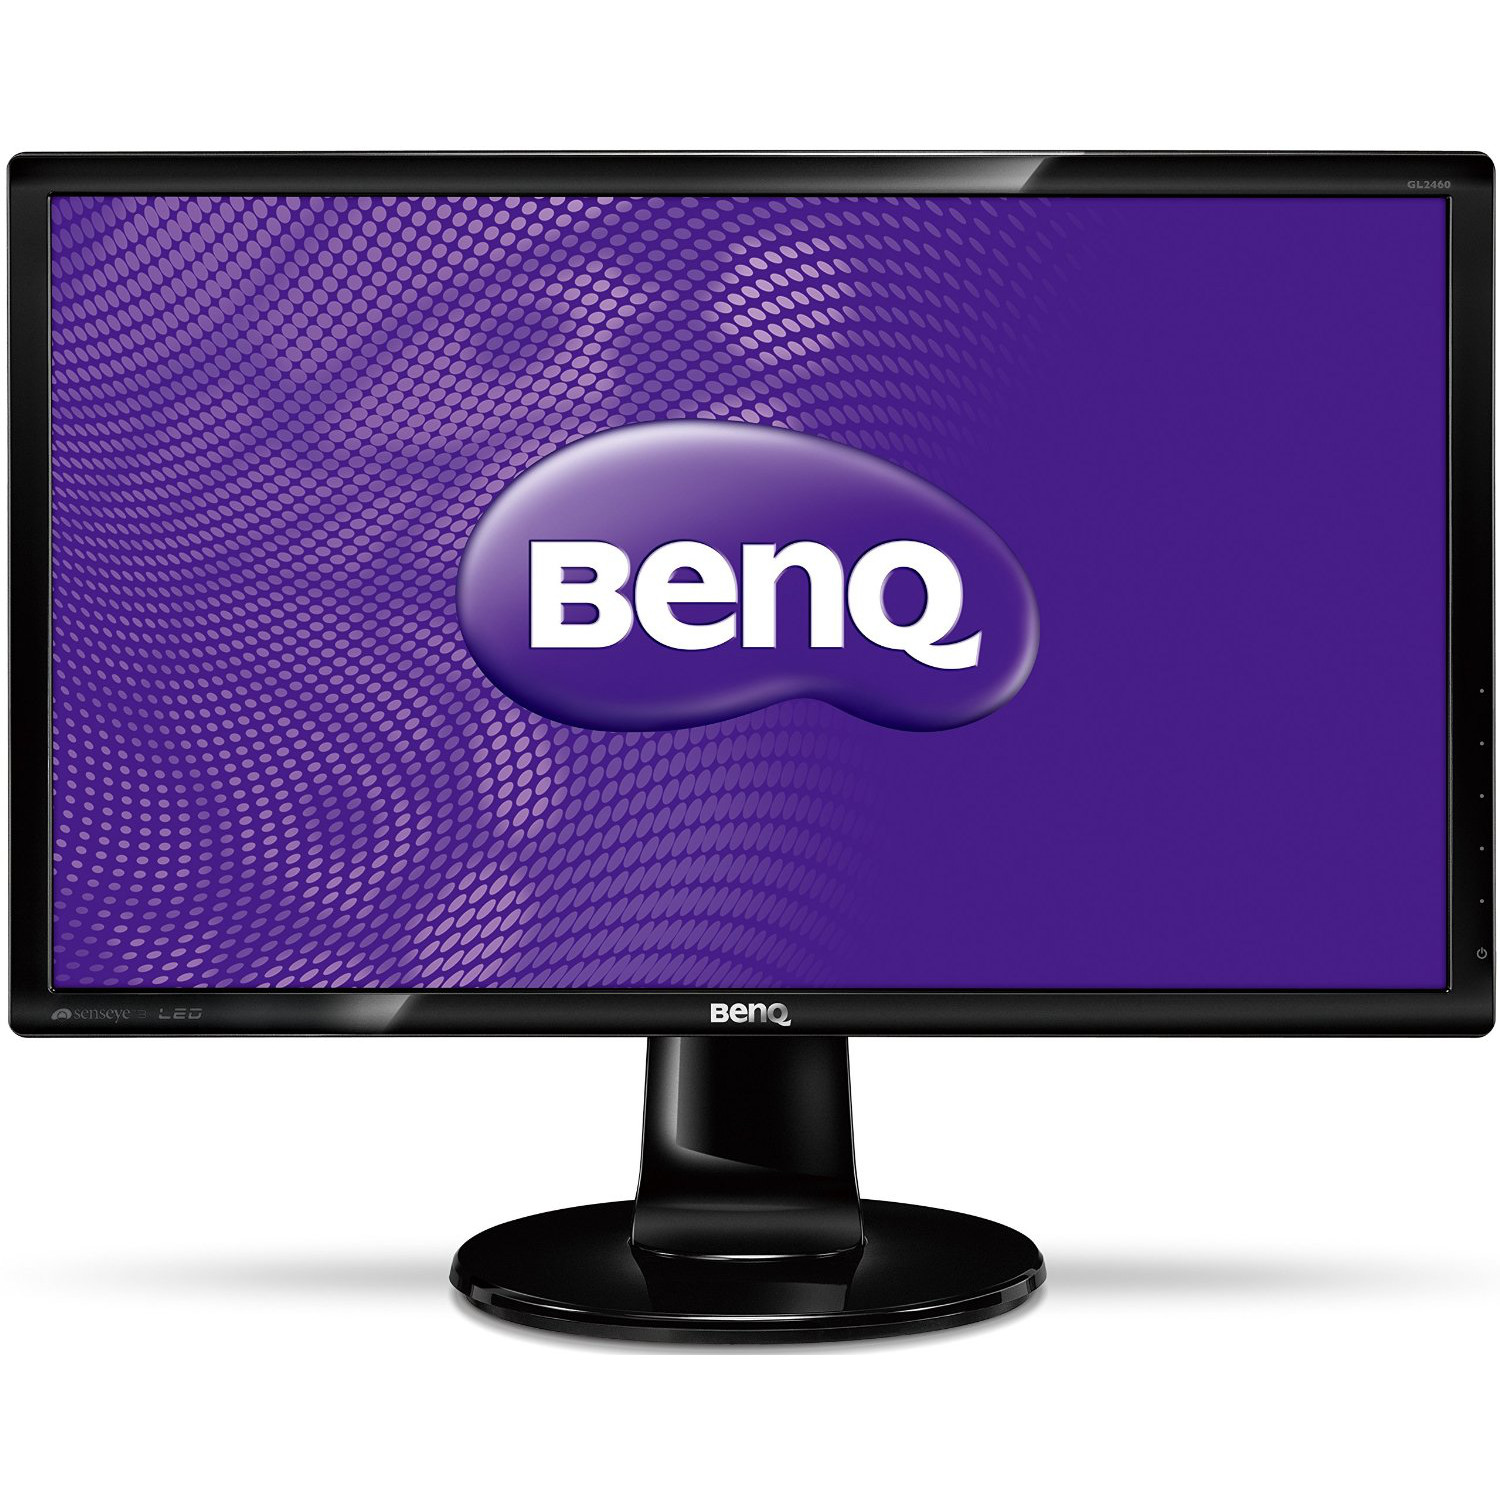  Monitor LED Benq GL2450, 24", Full HD, Negru 